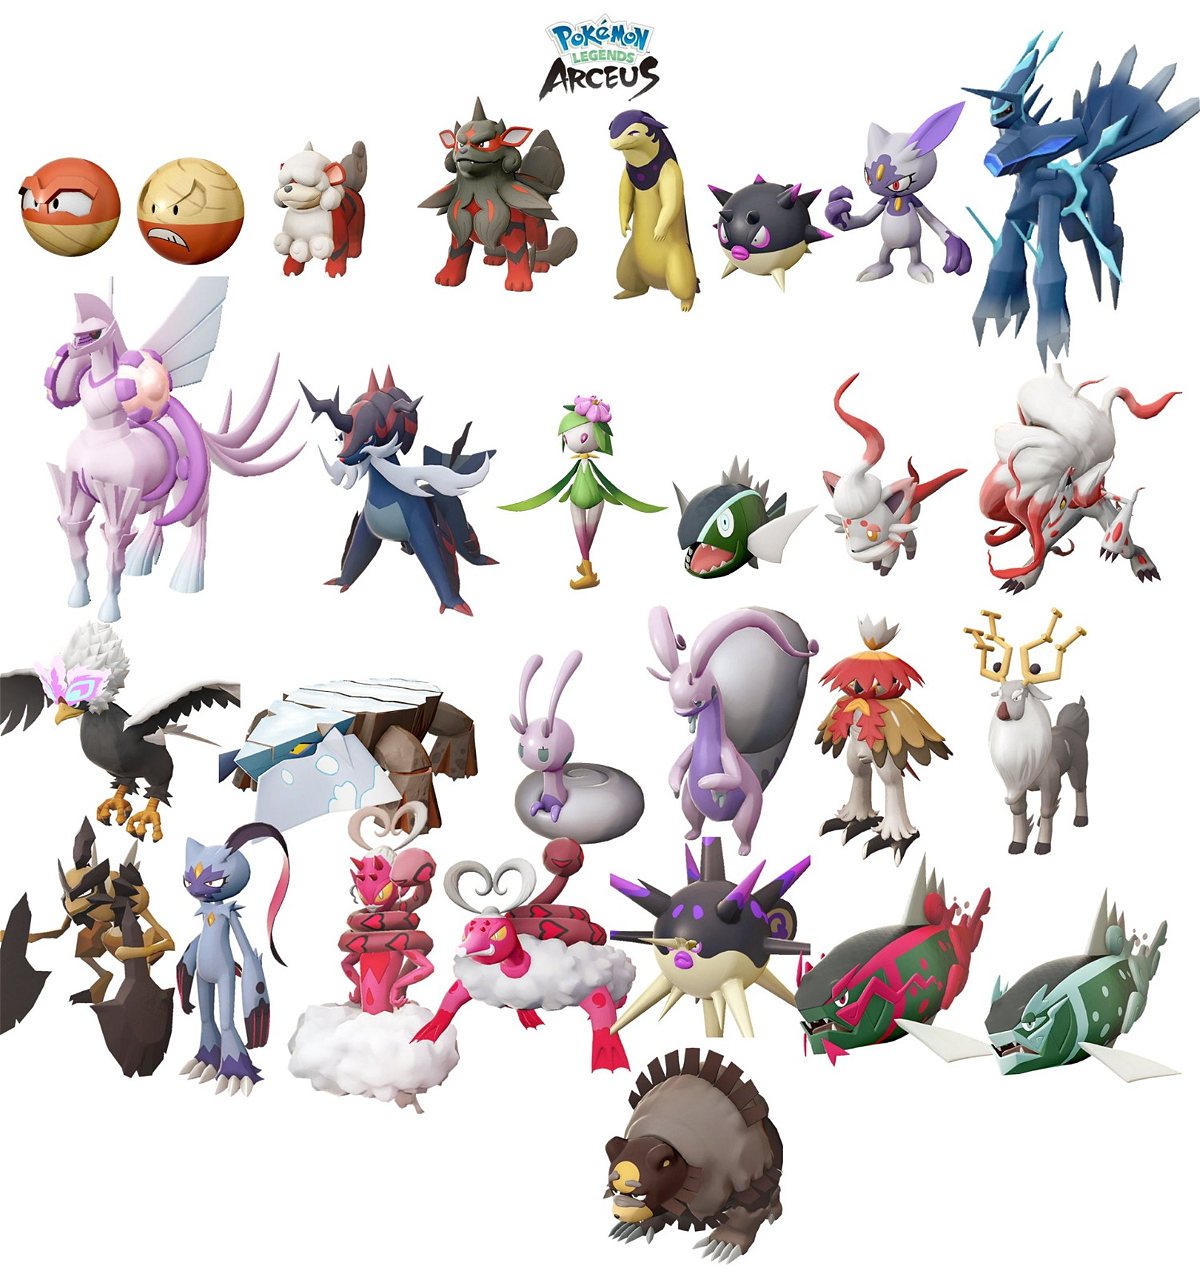 Pokédex de Leyendas Pokémon Arceus: Todos los Pokémon de Hisui - Meristation